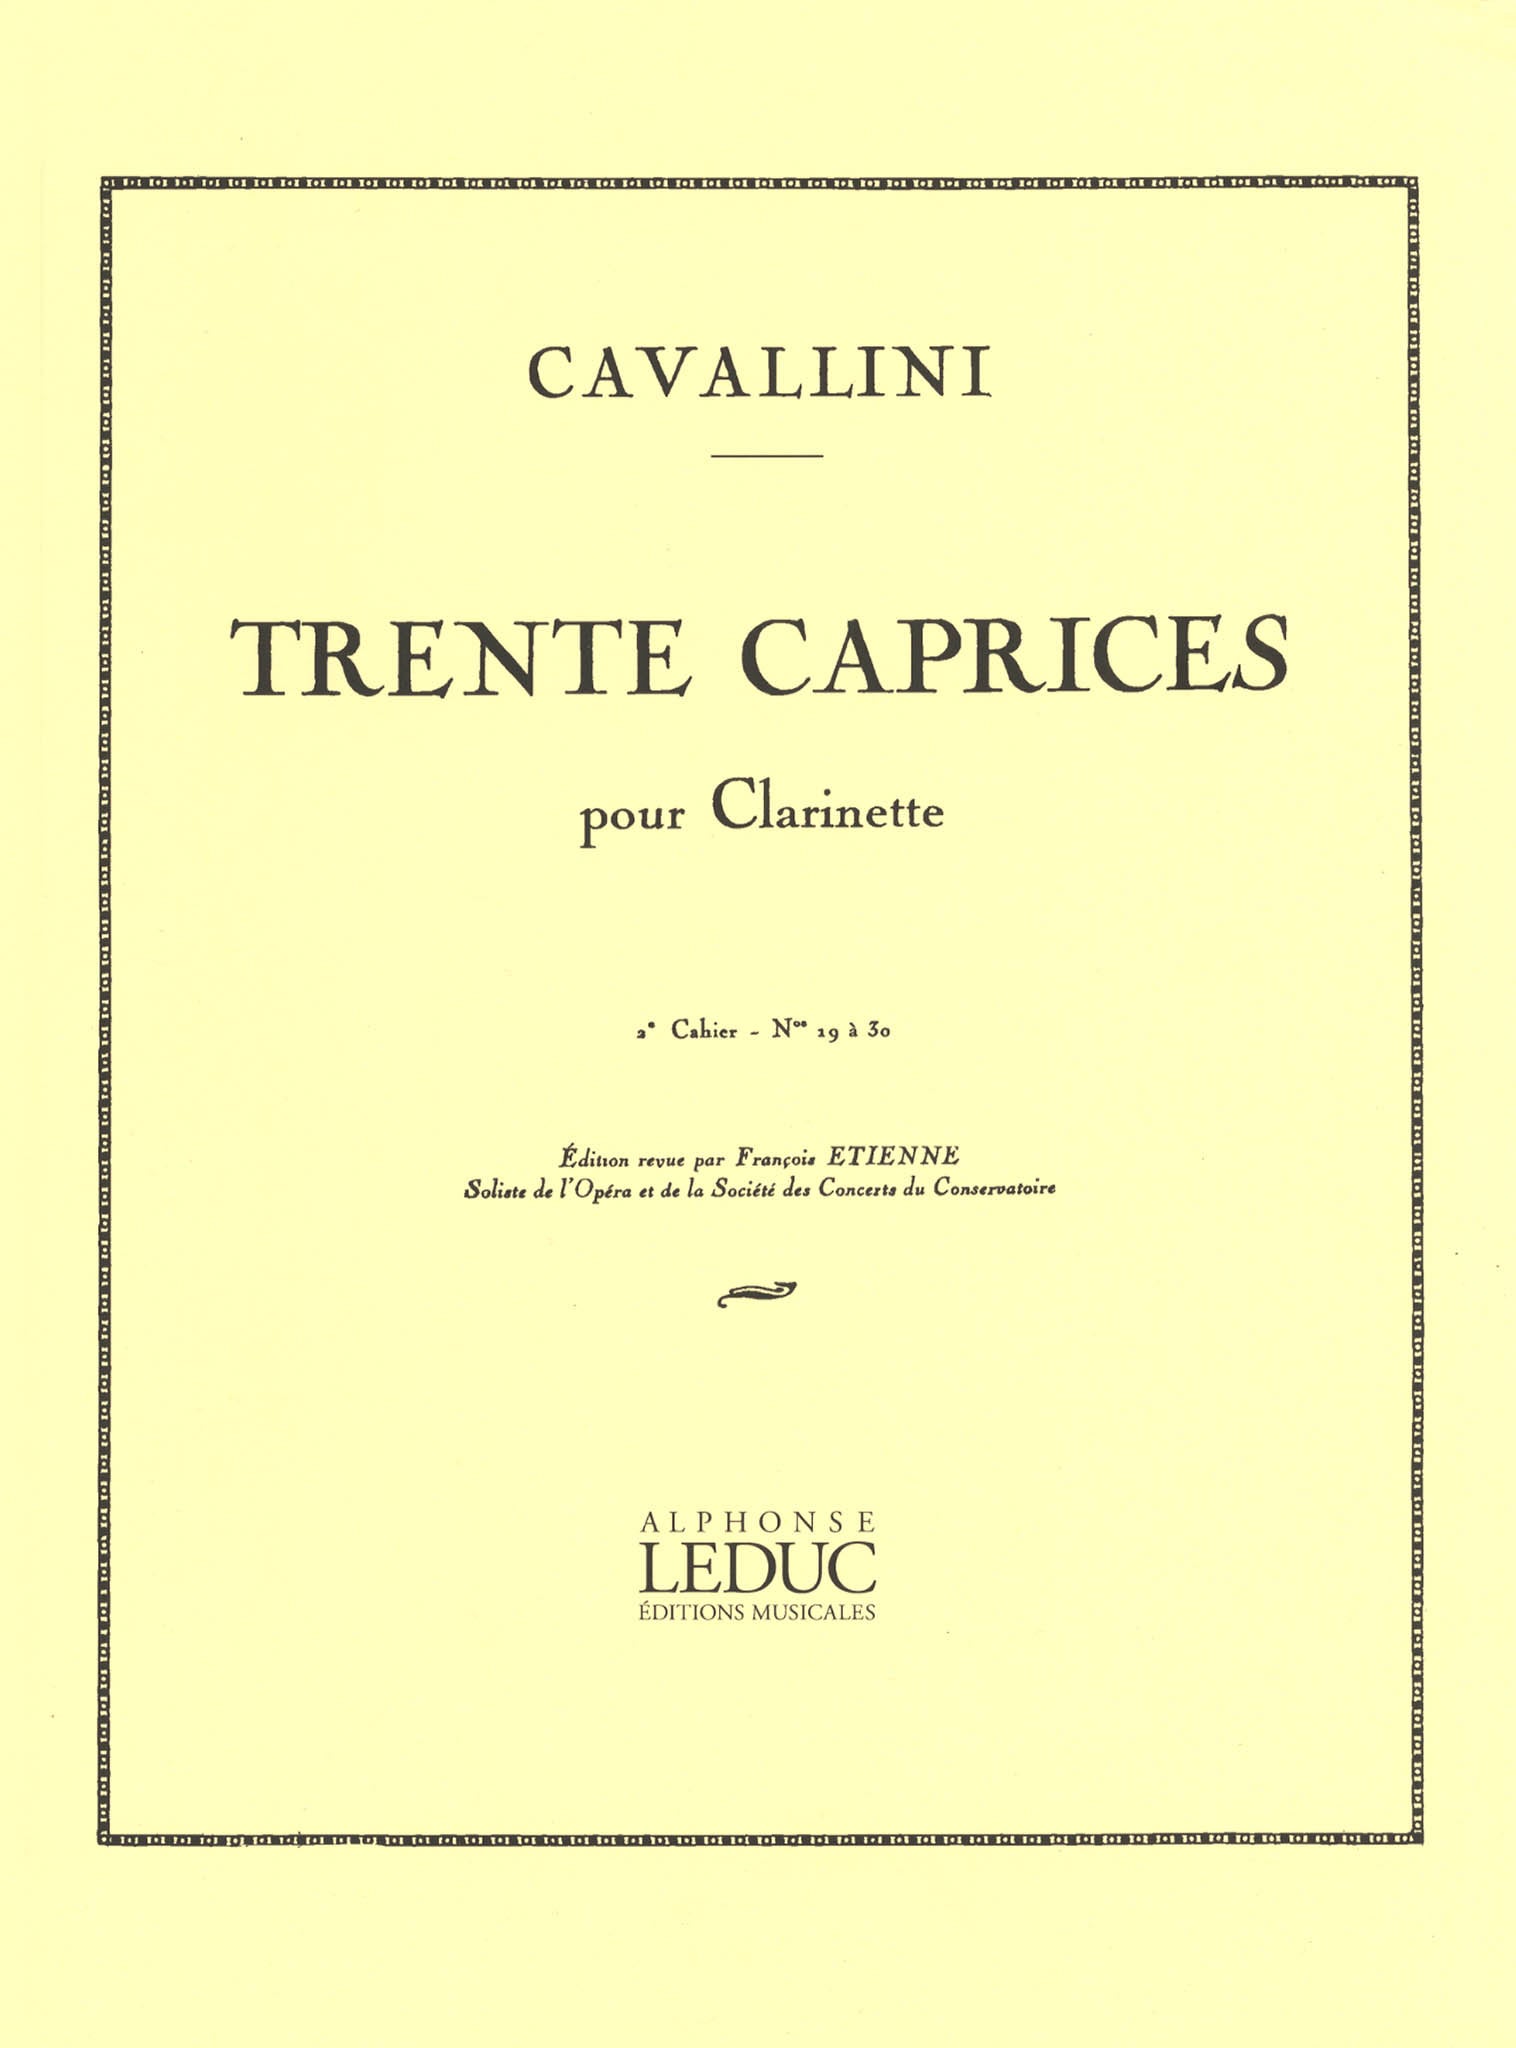 Cavallini 30 Caprices for Clarinet Book 2 Cover